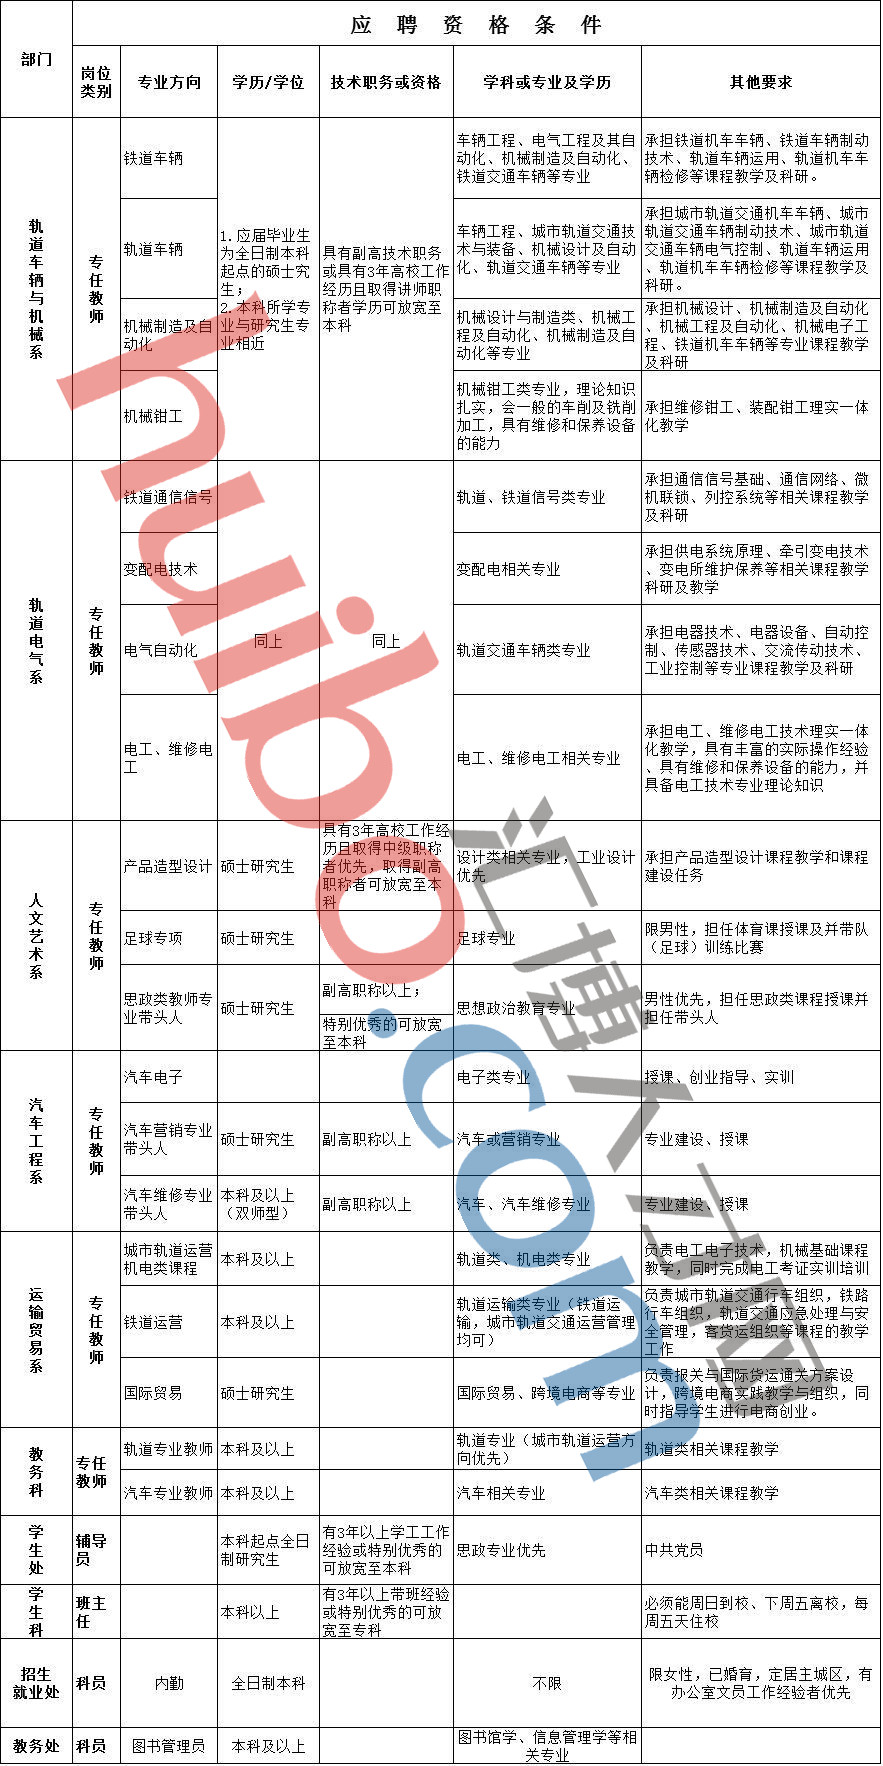 重庆公共运输职业学院2016年下半年人才招聘